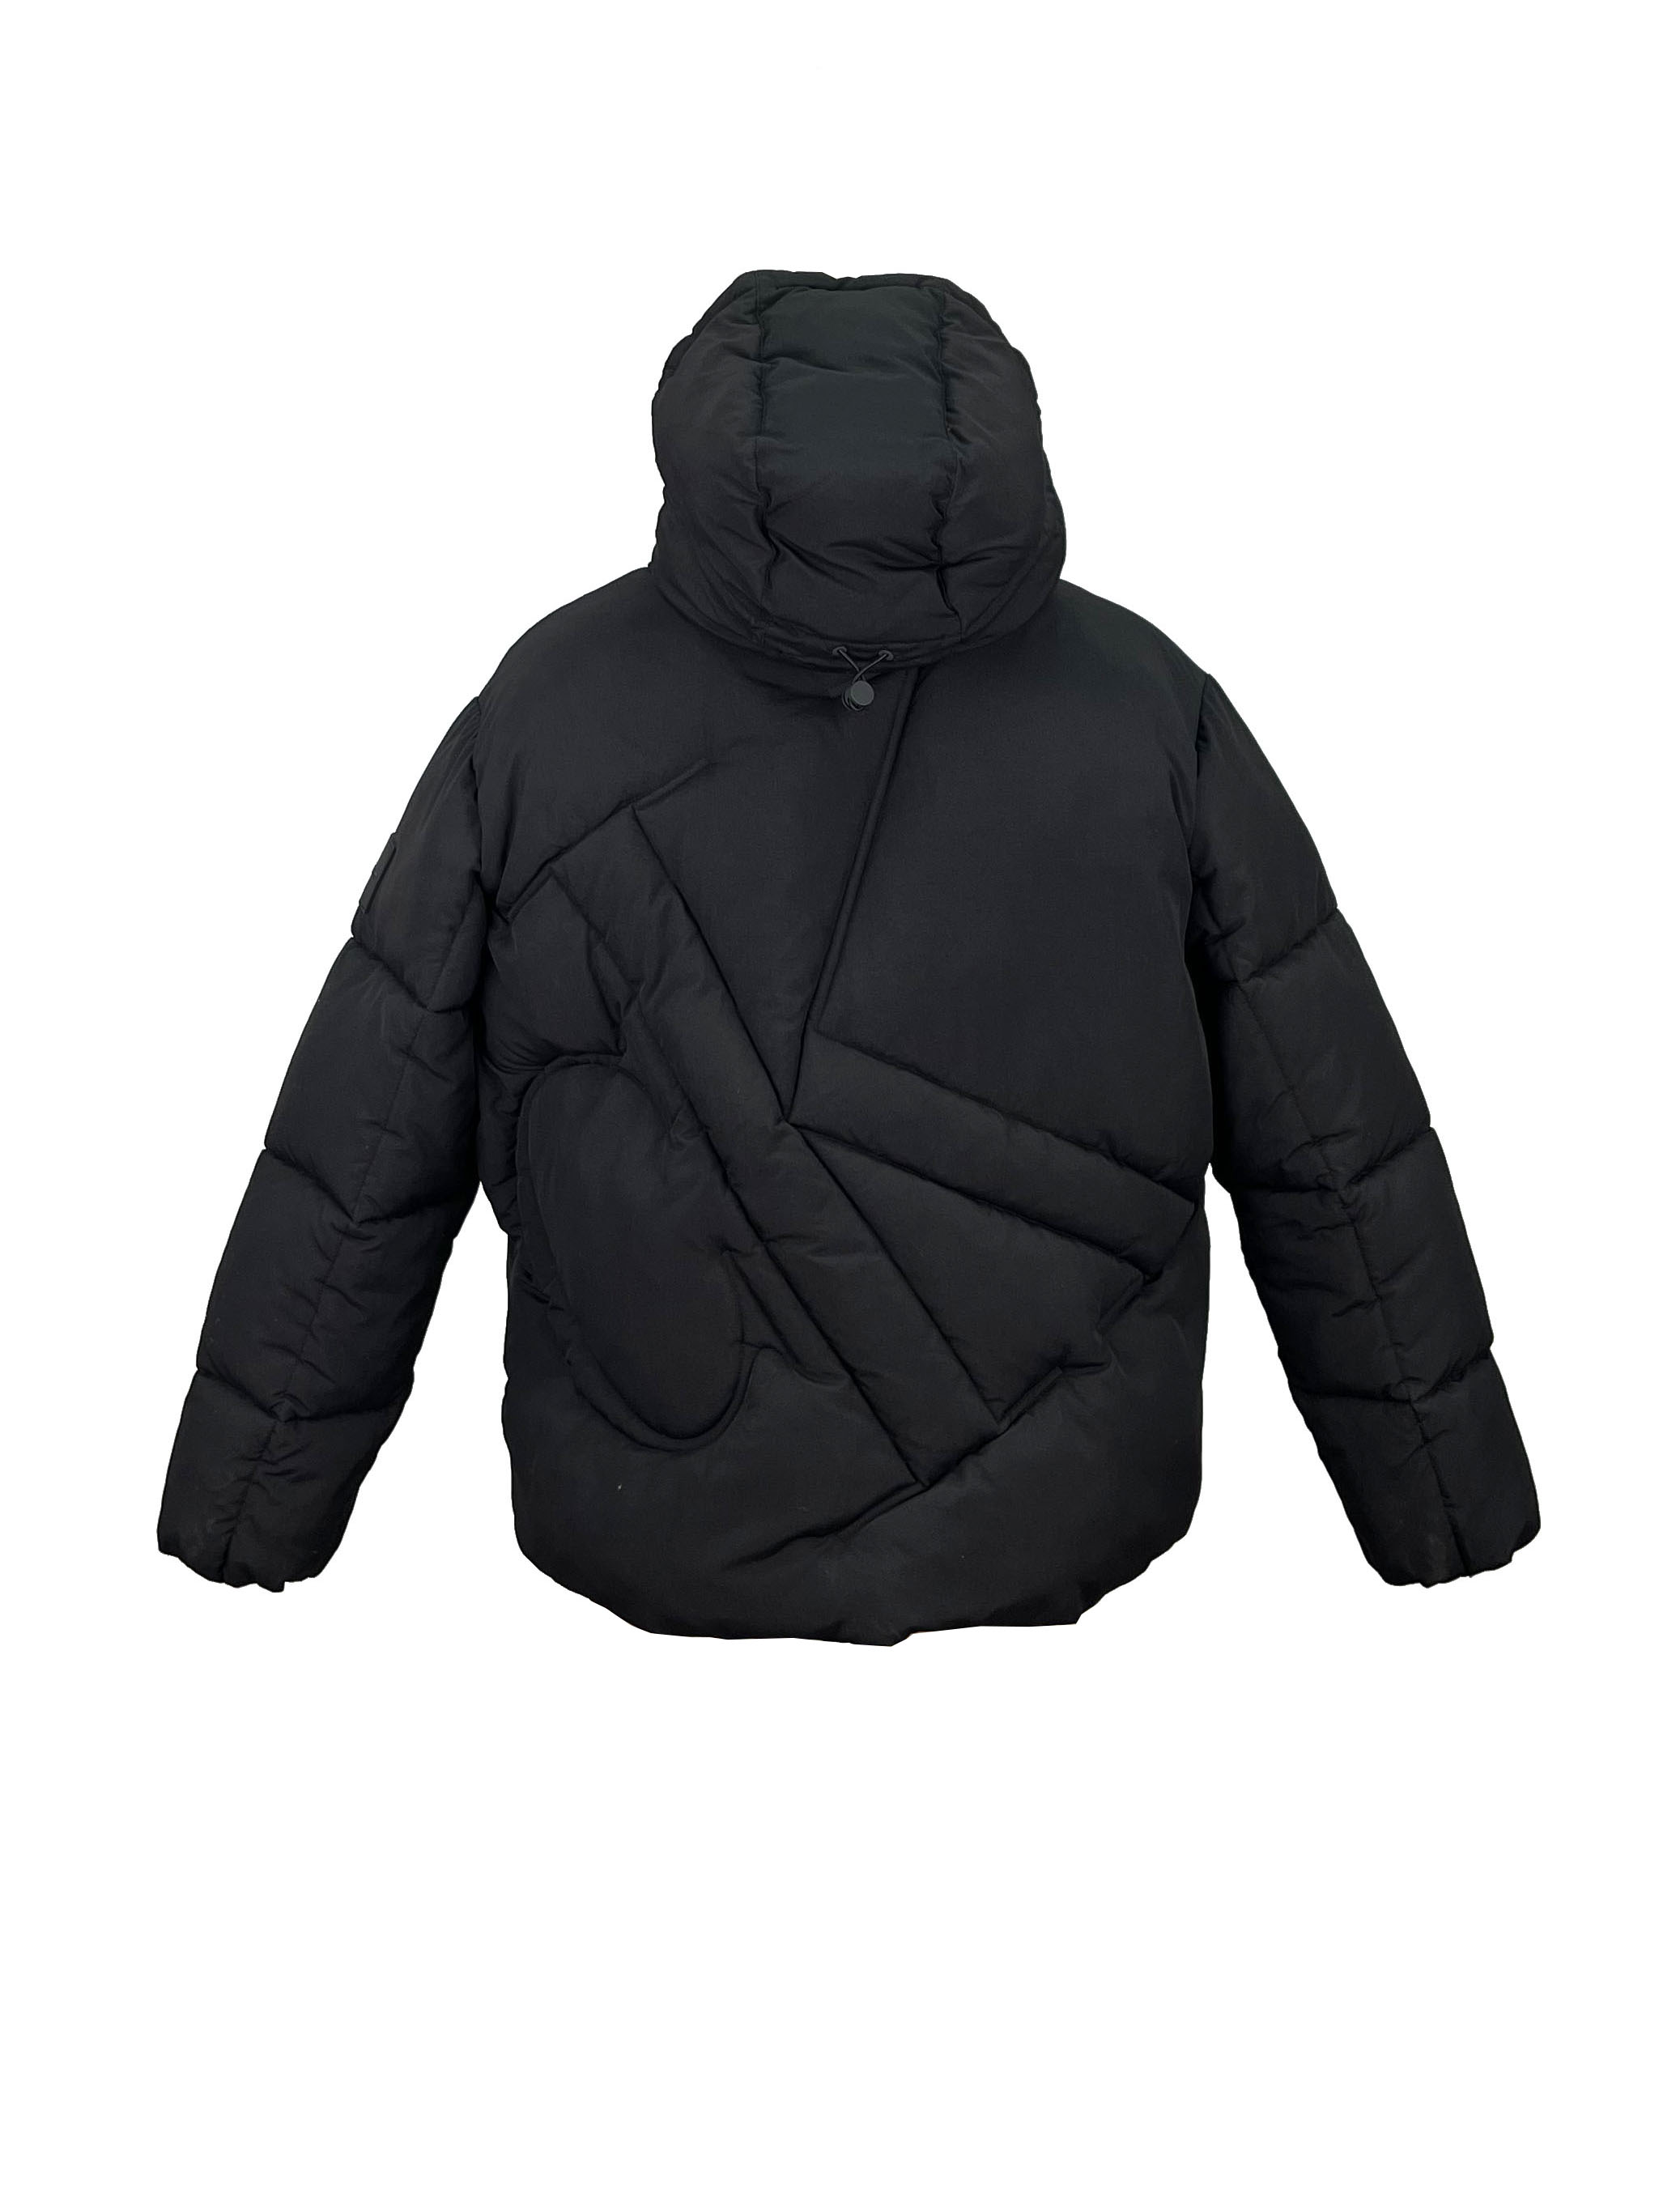 3.padded jacket.(3)